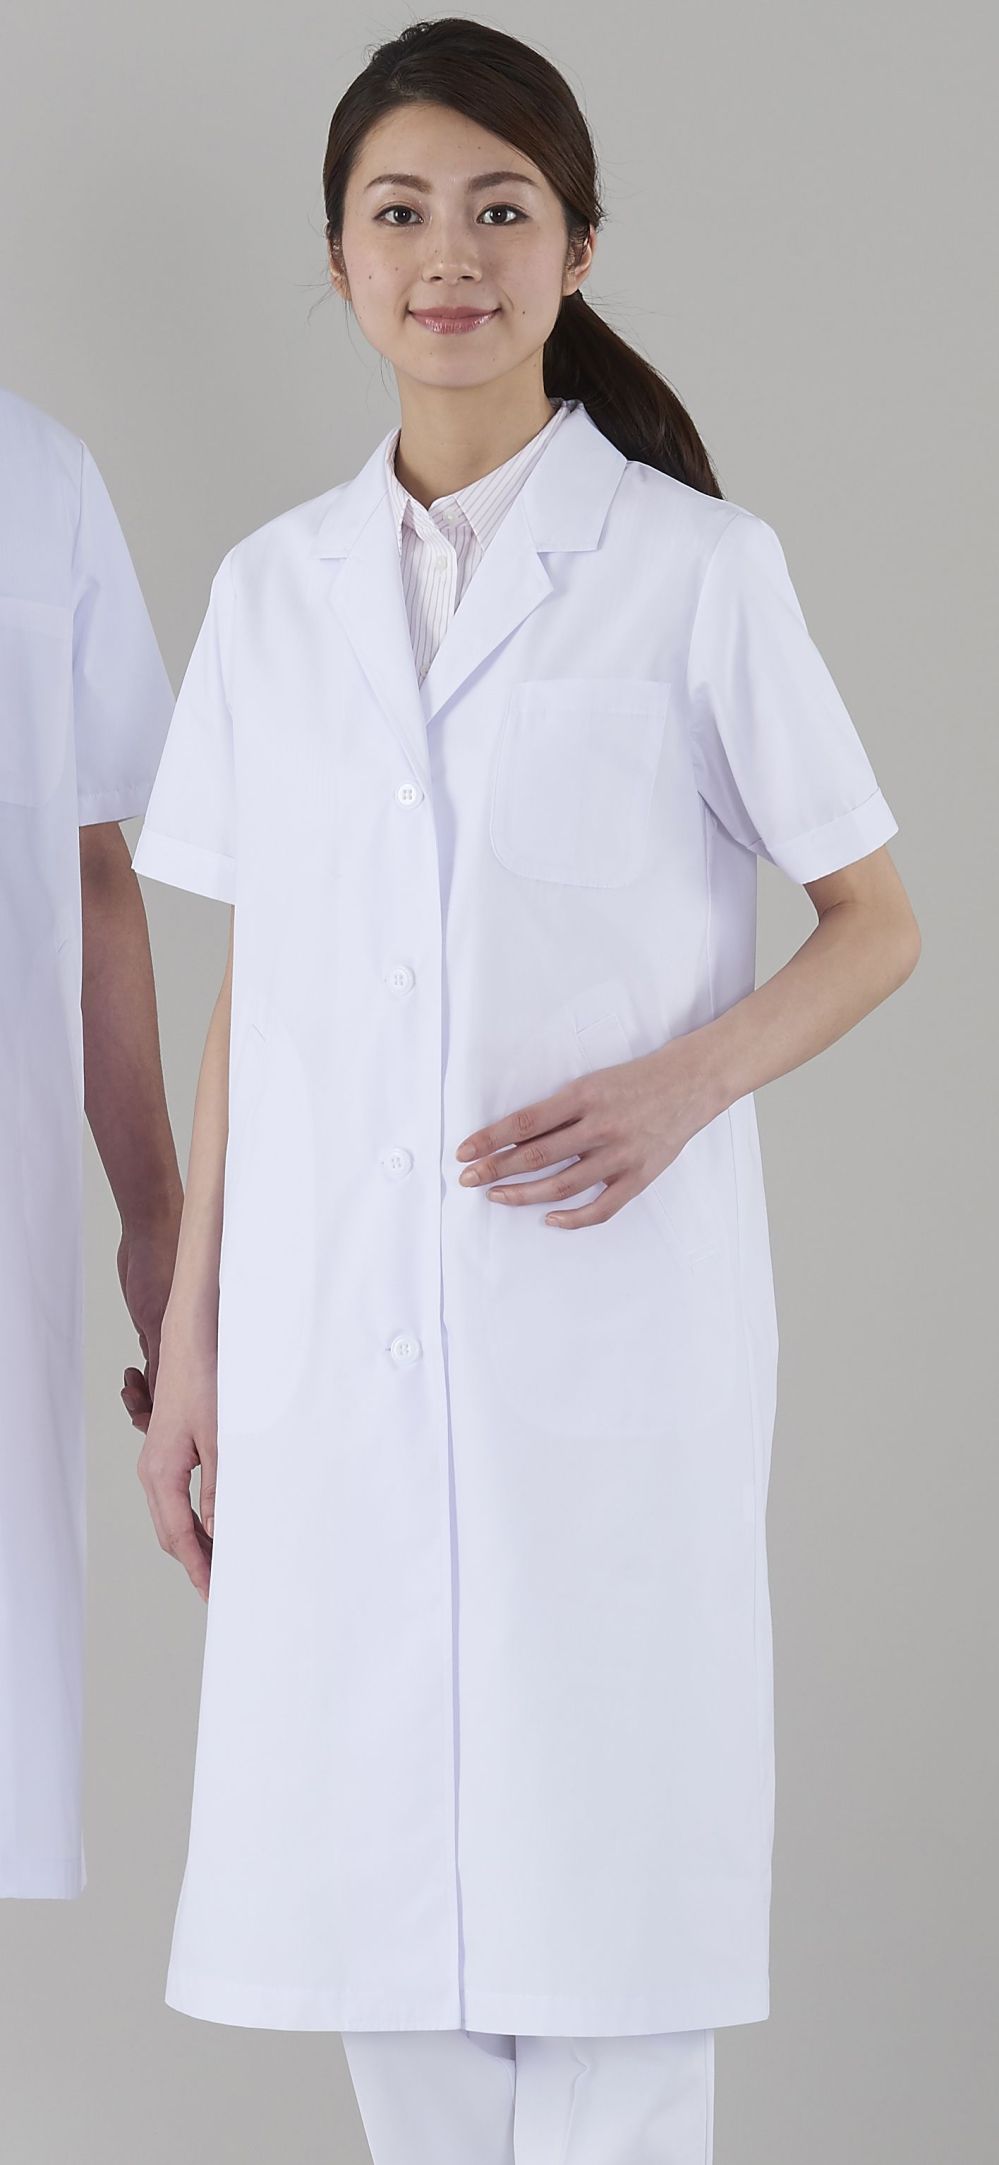 保障できる 医療ユニフォーム 白衣 レディス診察衣S型 KAZEN ホワイト 半袖 122-30 アプロン L 制服、作業服 